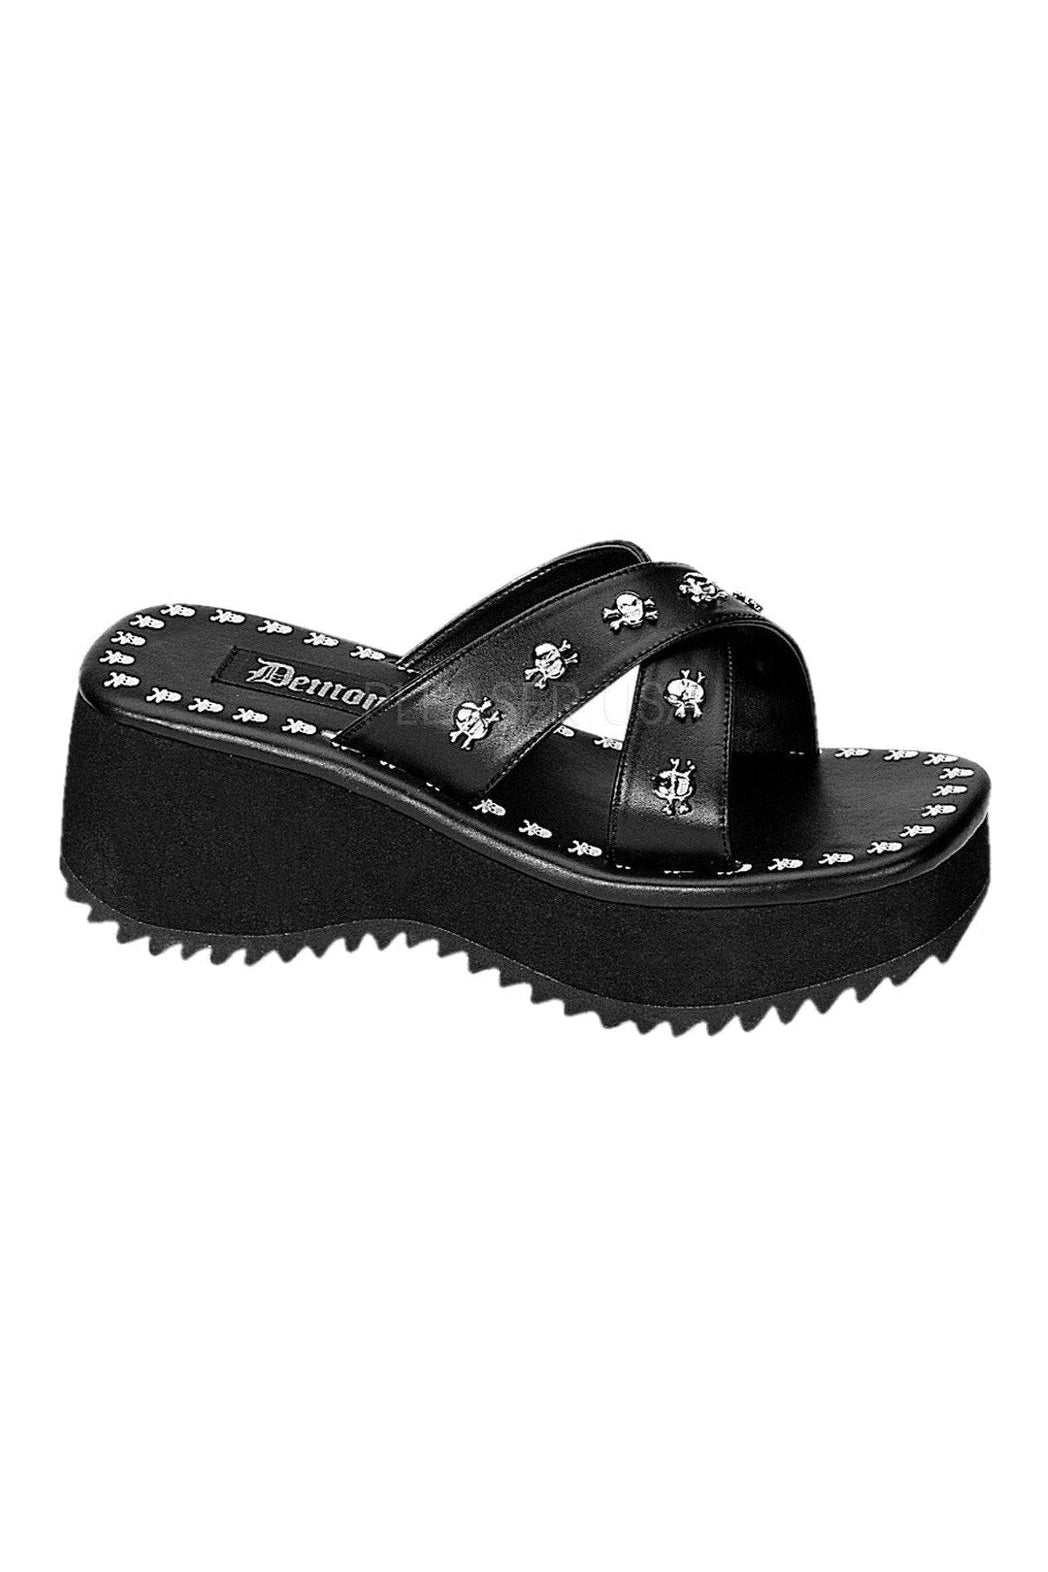 FLIP-05 Sandal | Black Faux Leather-Demonia-Black-Sandals-SEXYSHOES.COM